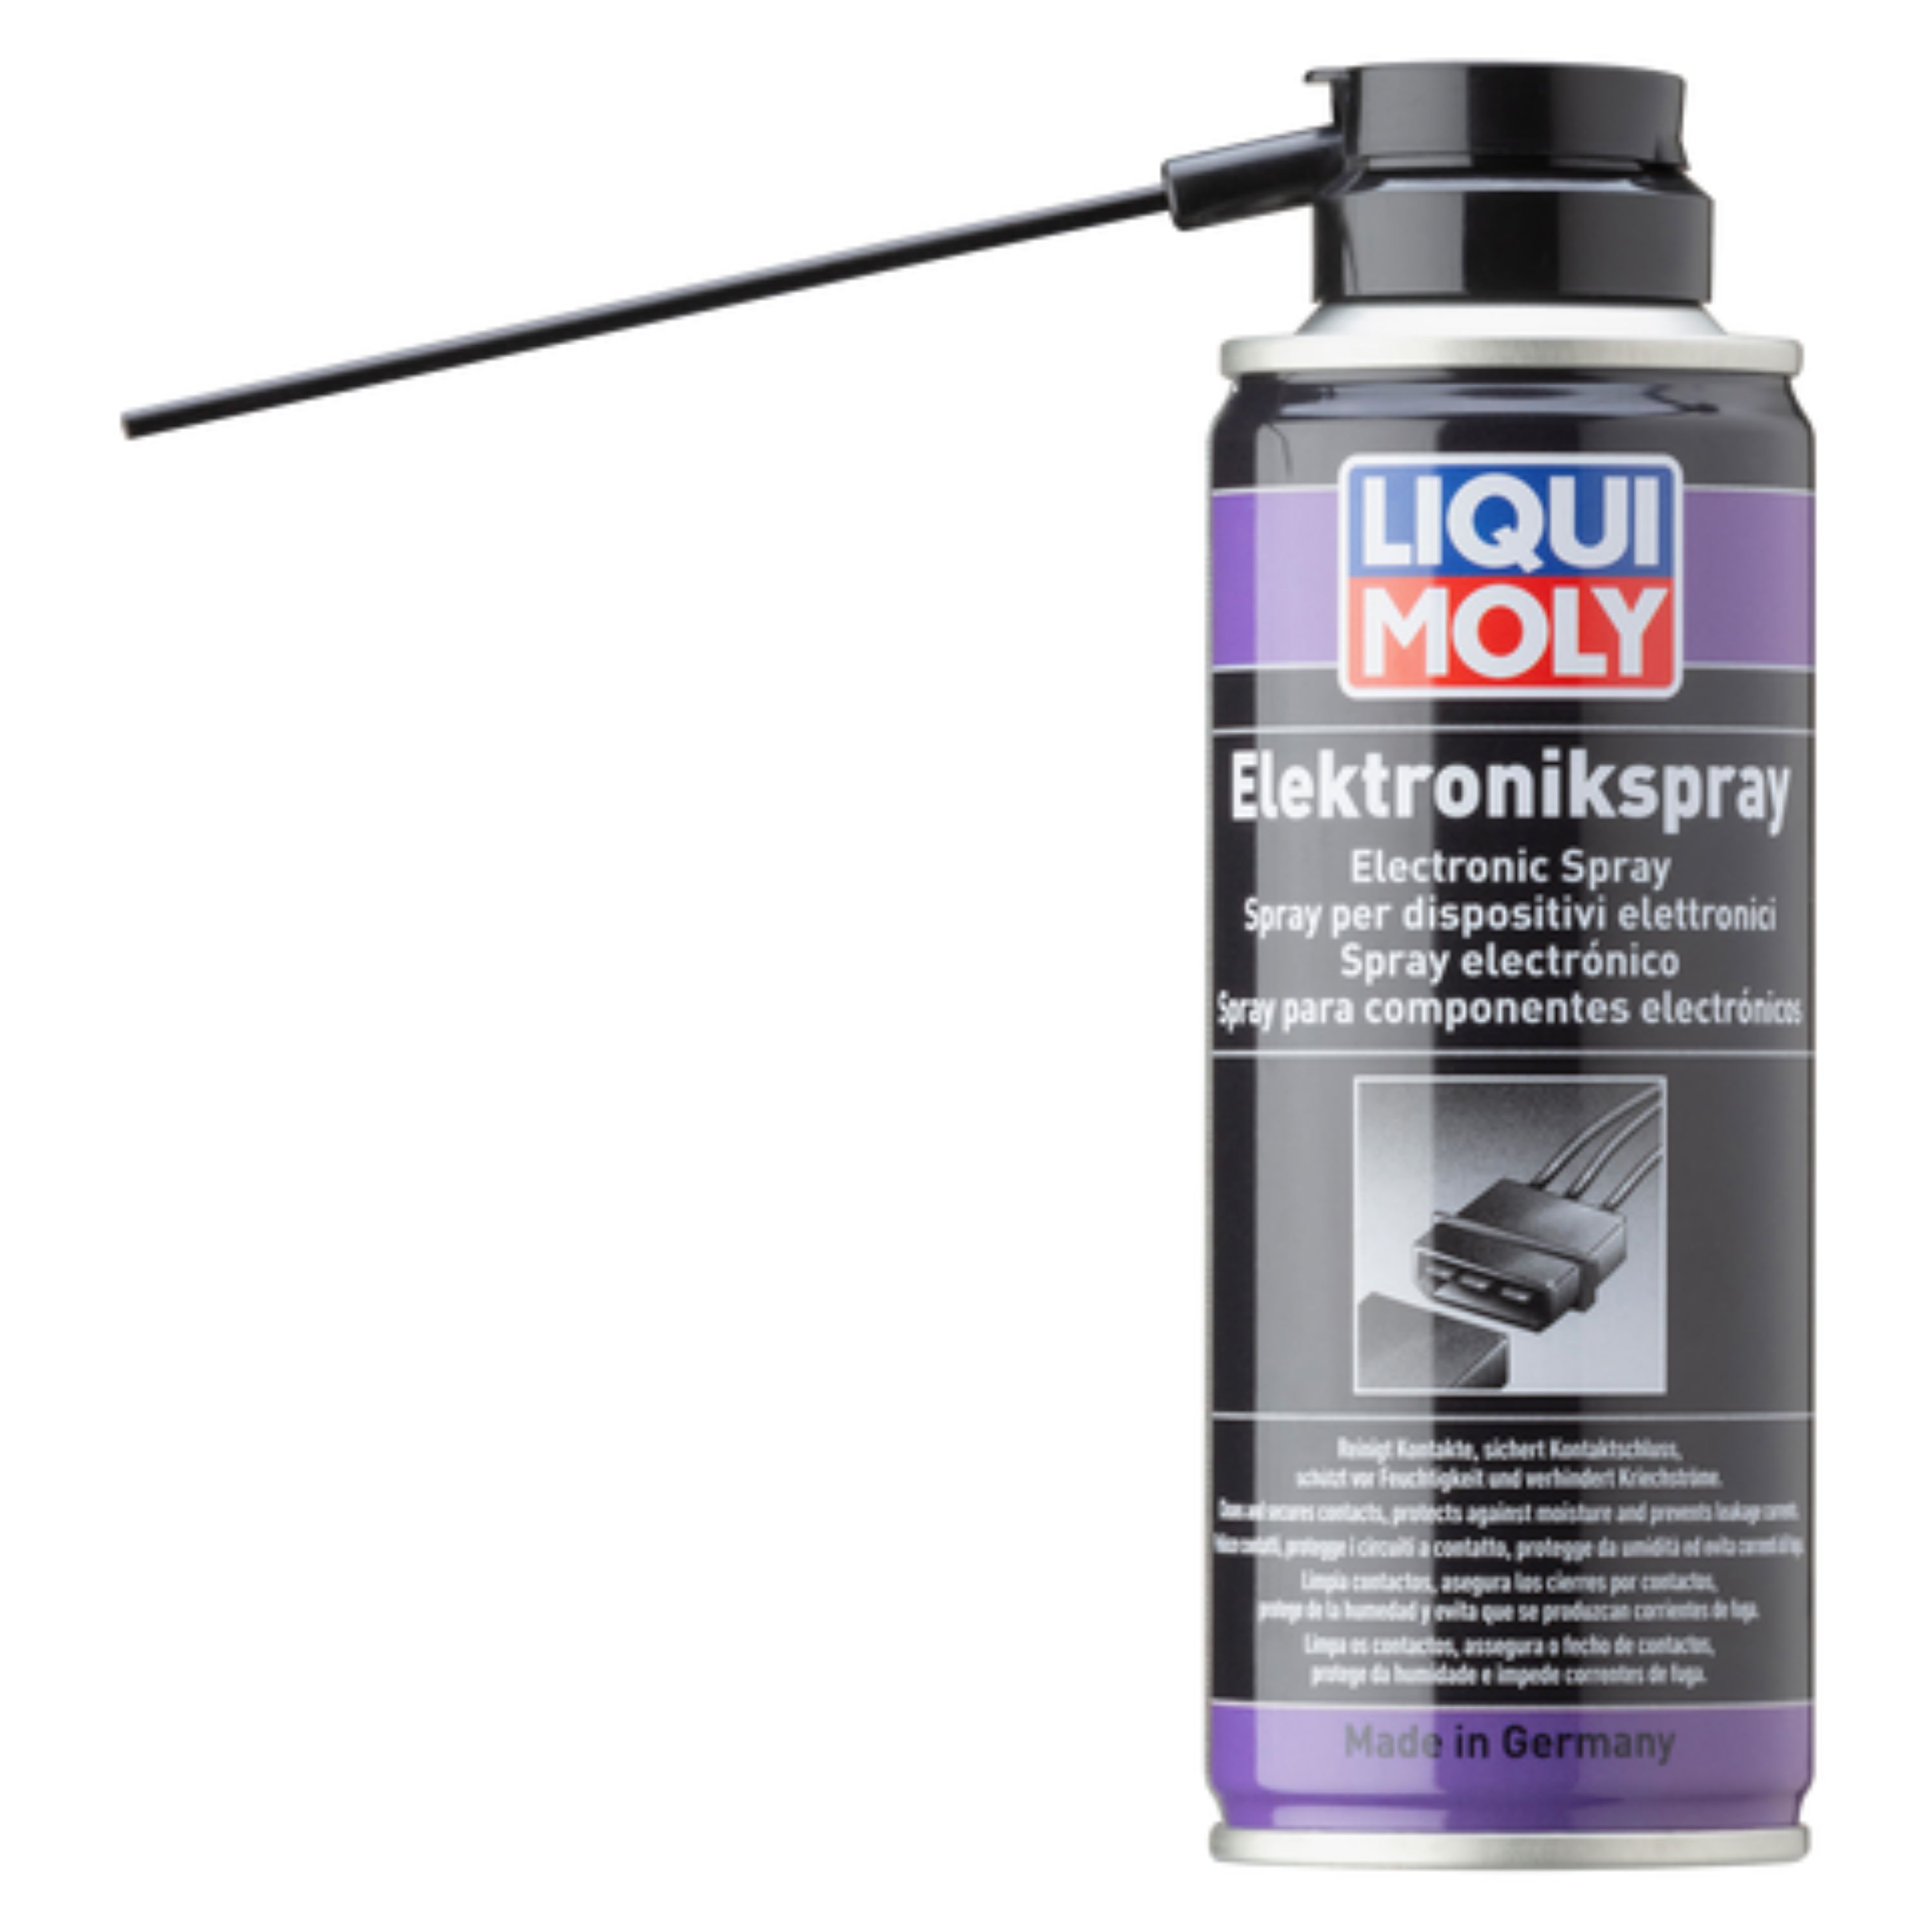 Средство для очистки контактов. Liqui Moly Electronic-Spray. 3110 Liqui Moly. 4084 Liqui Moly. Ликви моли спрей для электроконтактов.